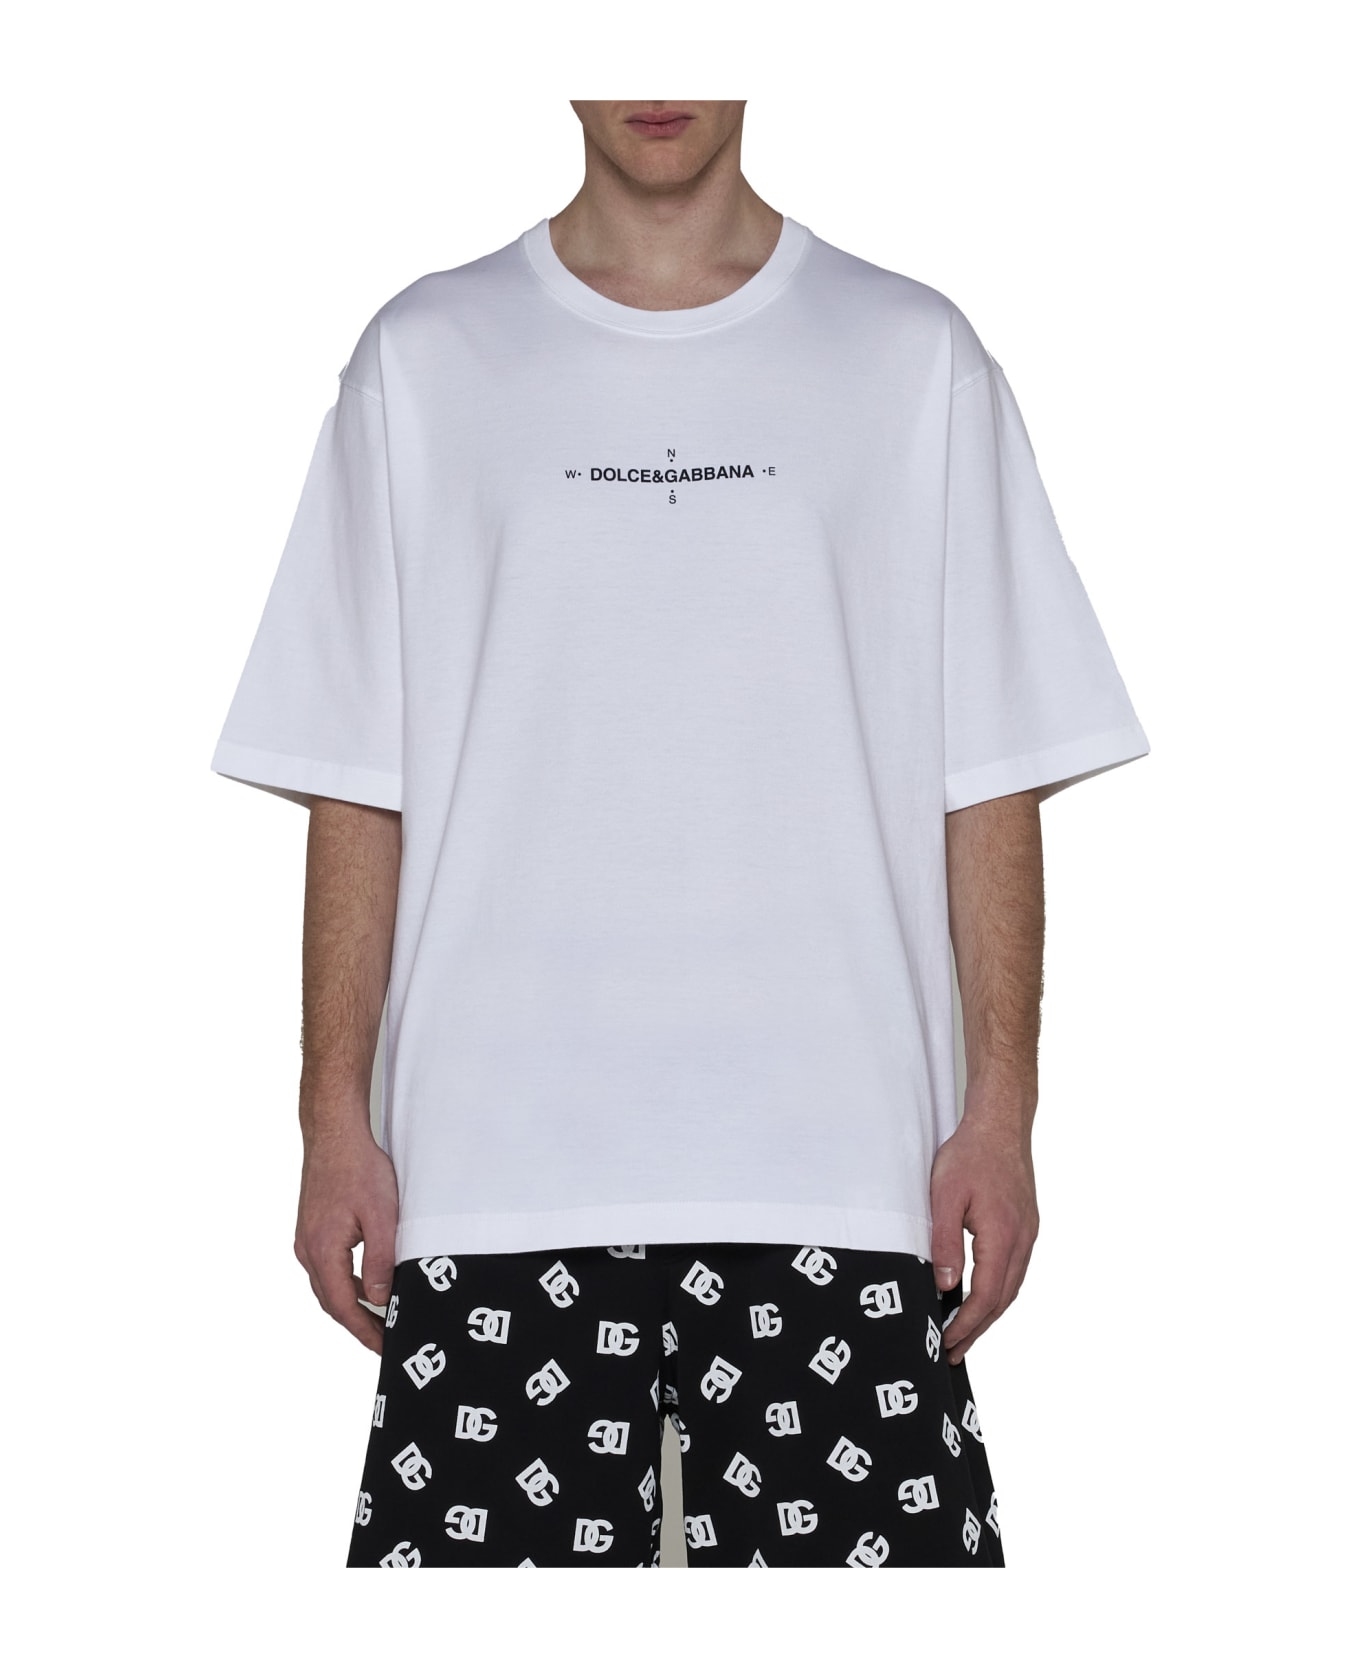 Dolce & Gabbana Marina Print T-shirt - Bianco otticco